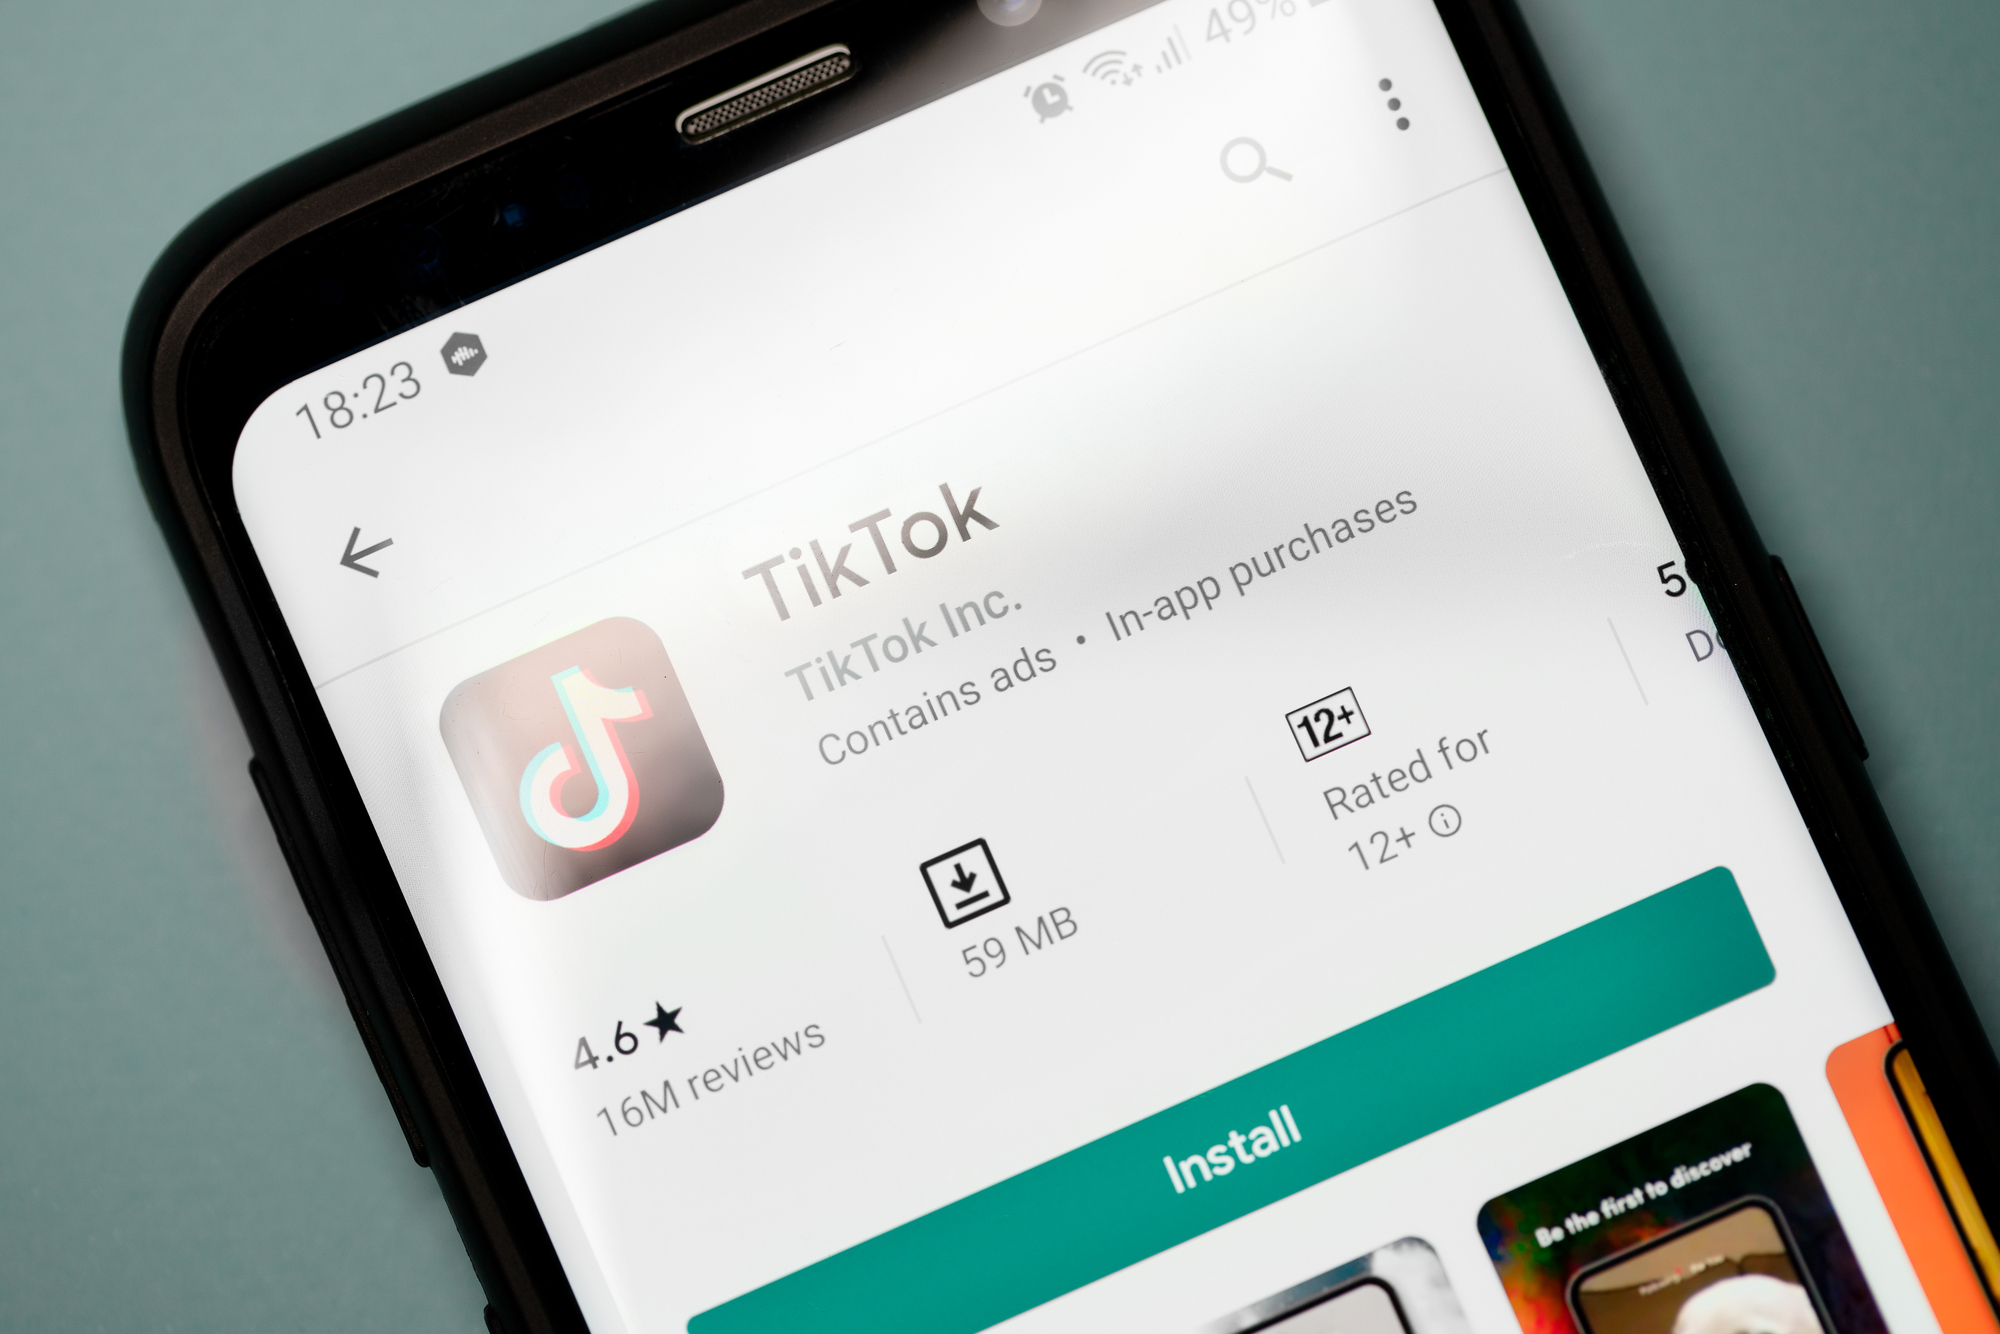 TikTok начала тестировать опцию покупок в приложении – Bloomberg